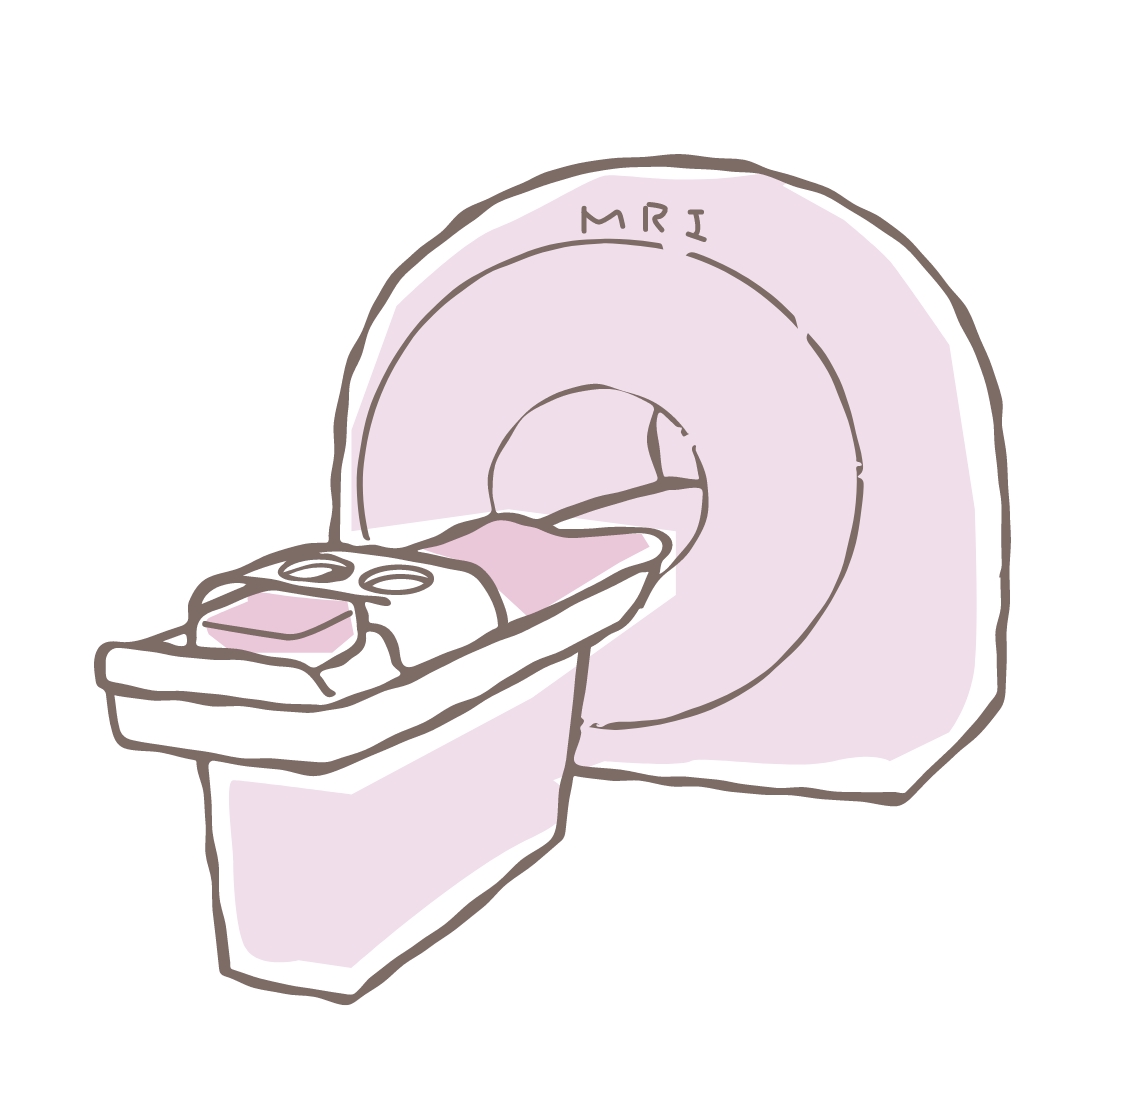 MRI機器のイラスト